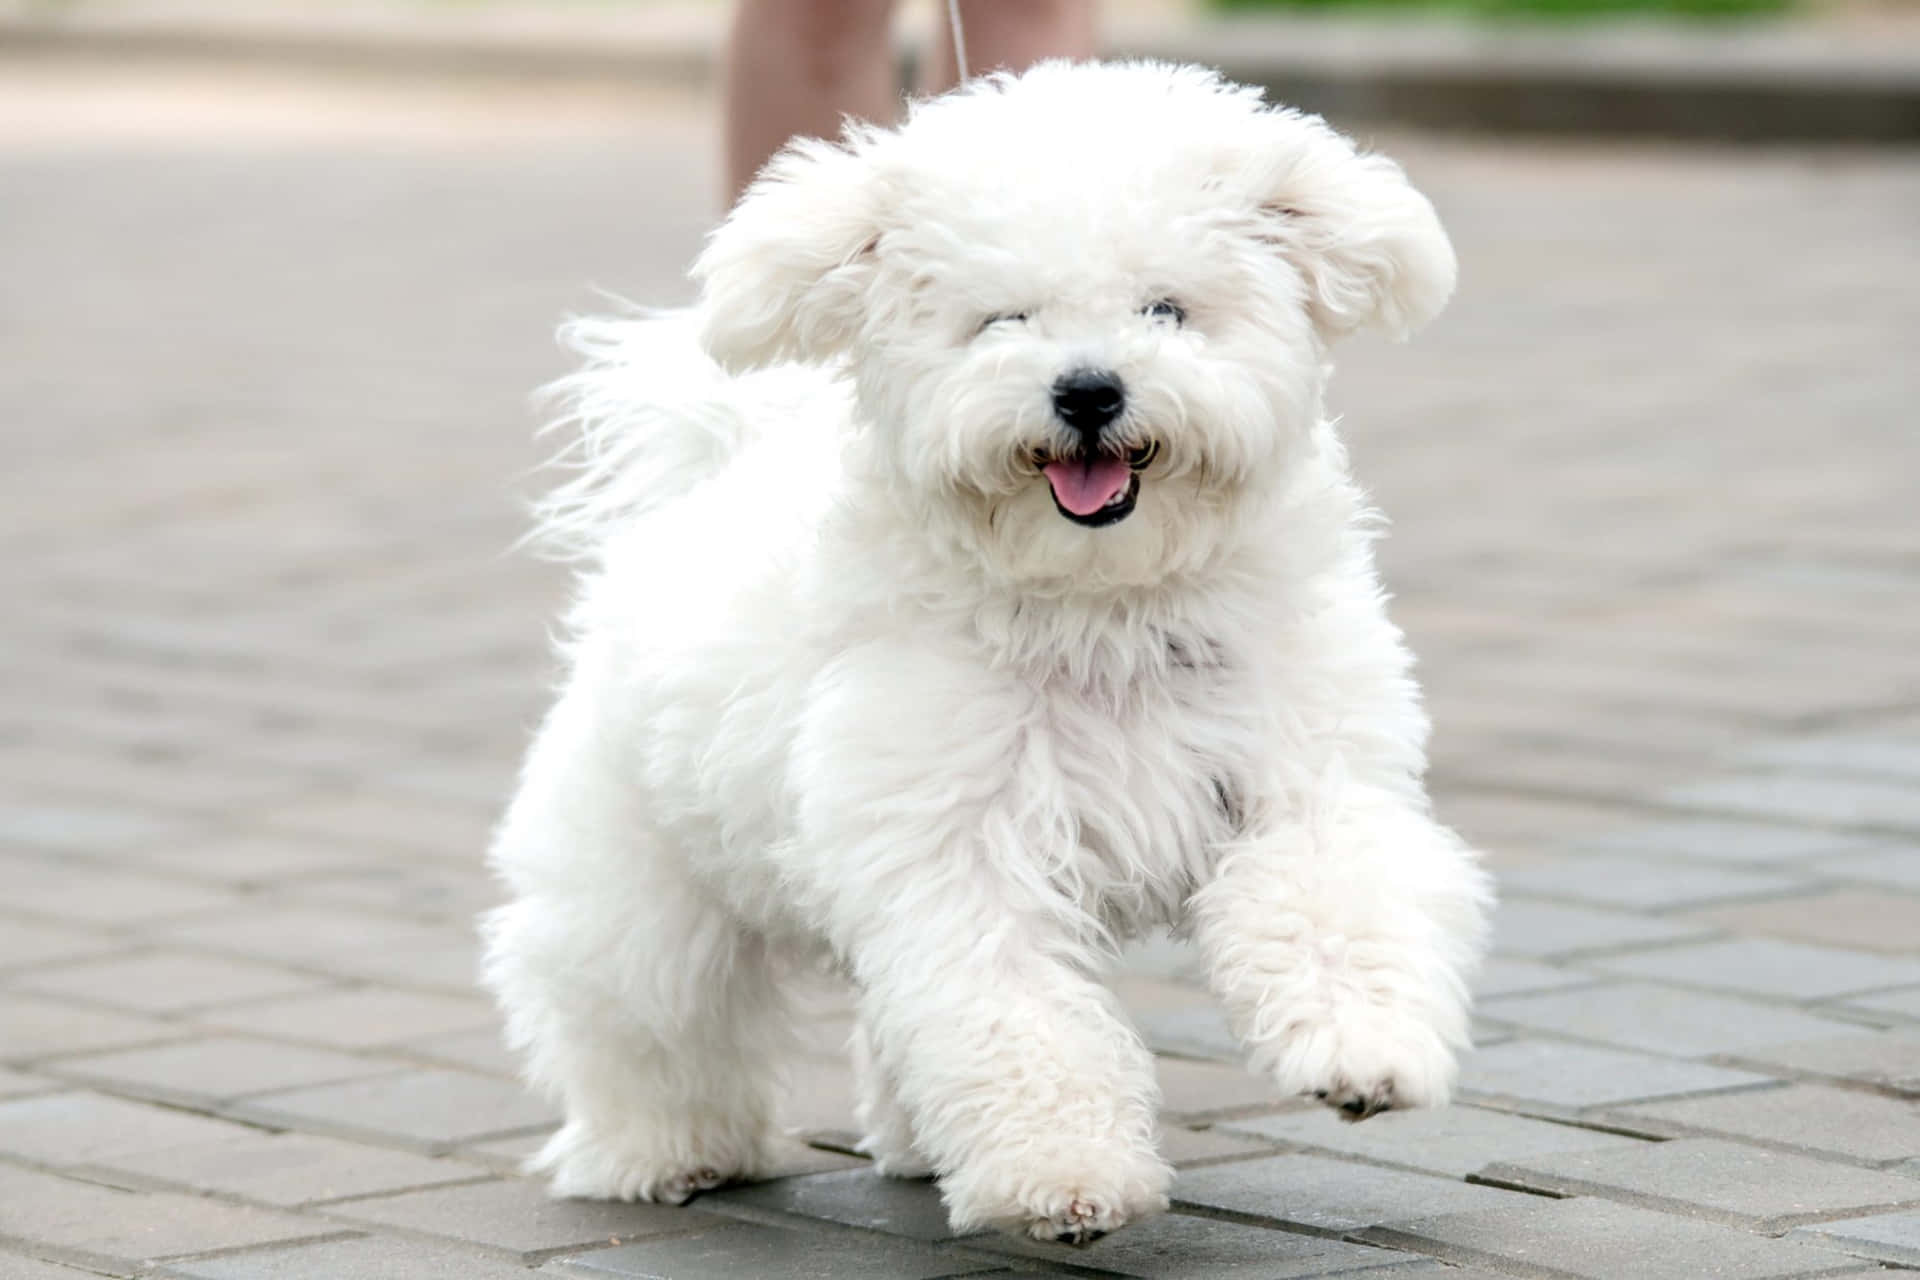 Cutest pup around - Bichon Frise